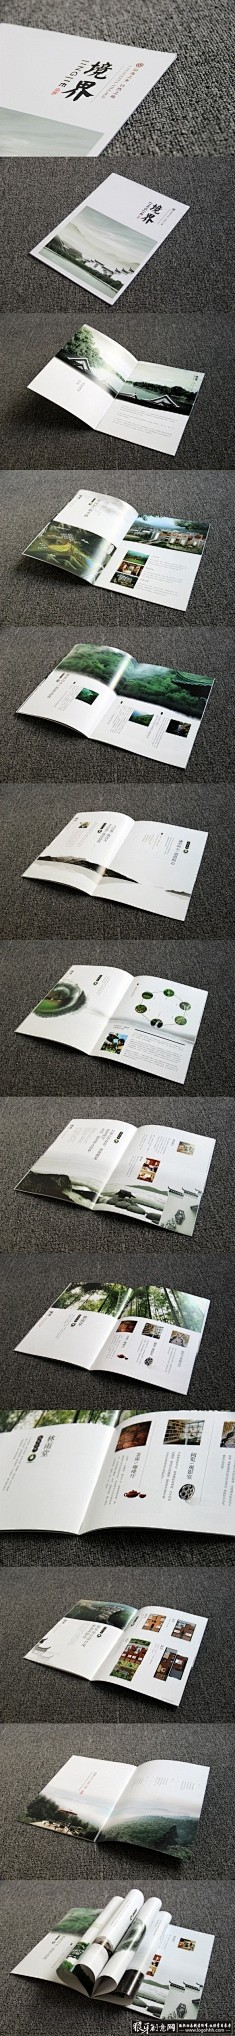 品牌画册设计灵感,企业形象画册设计创意灵...